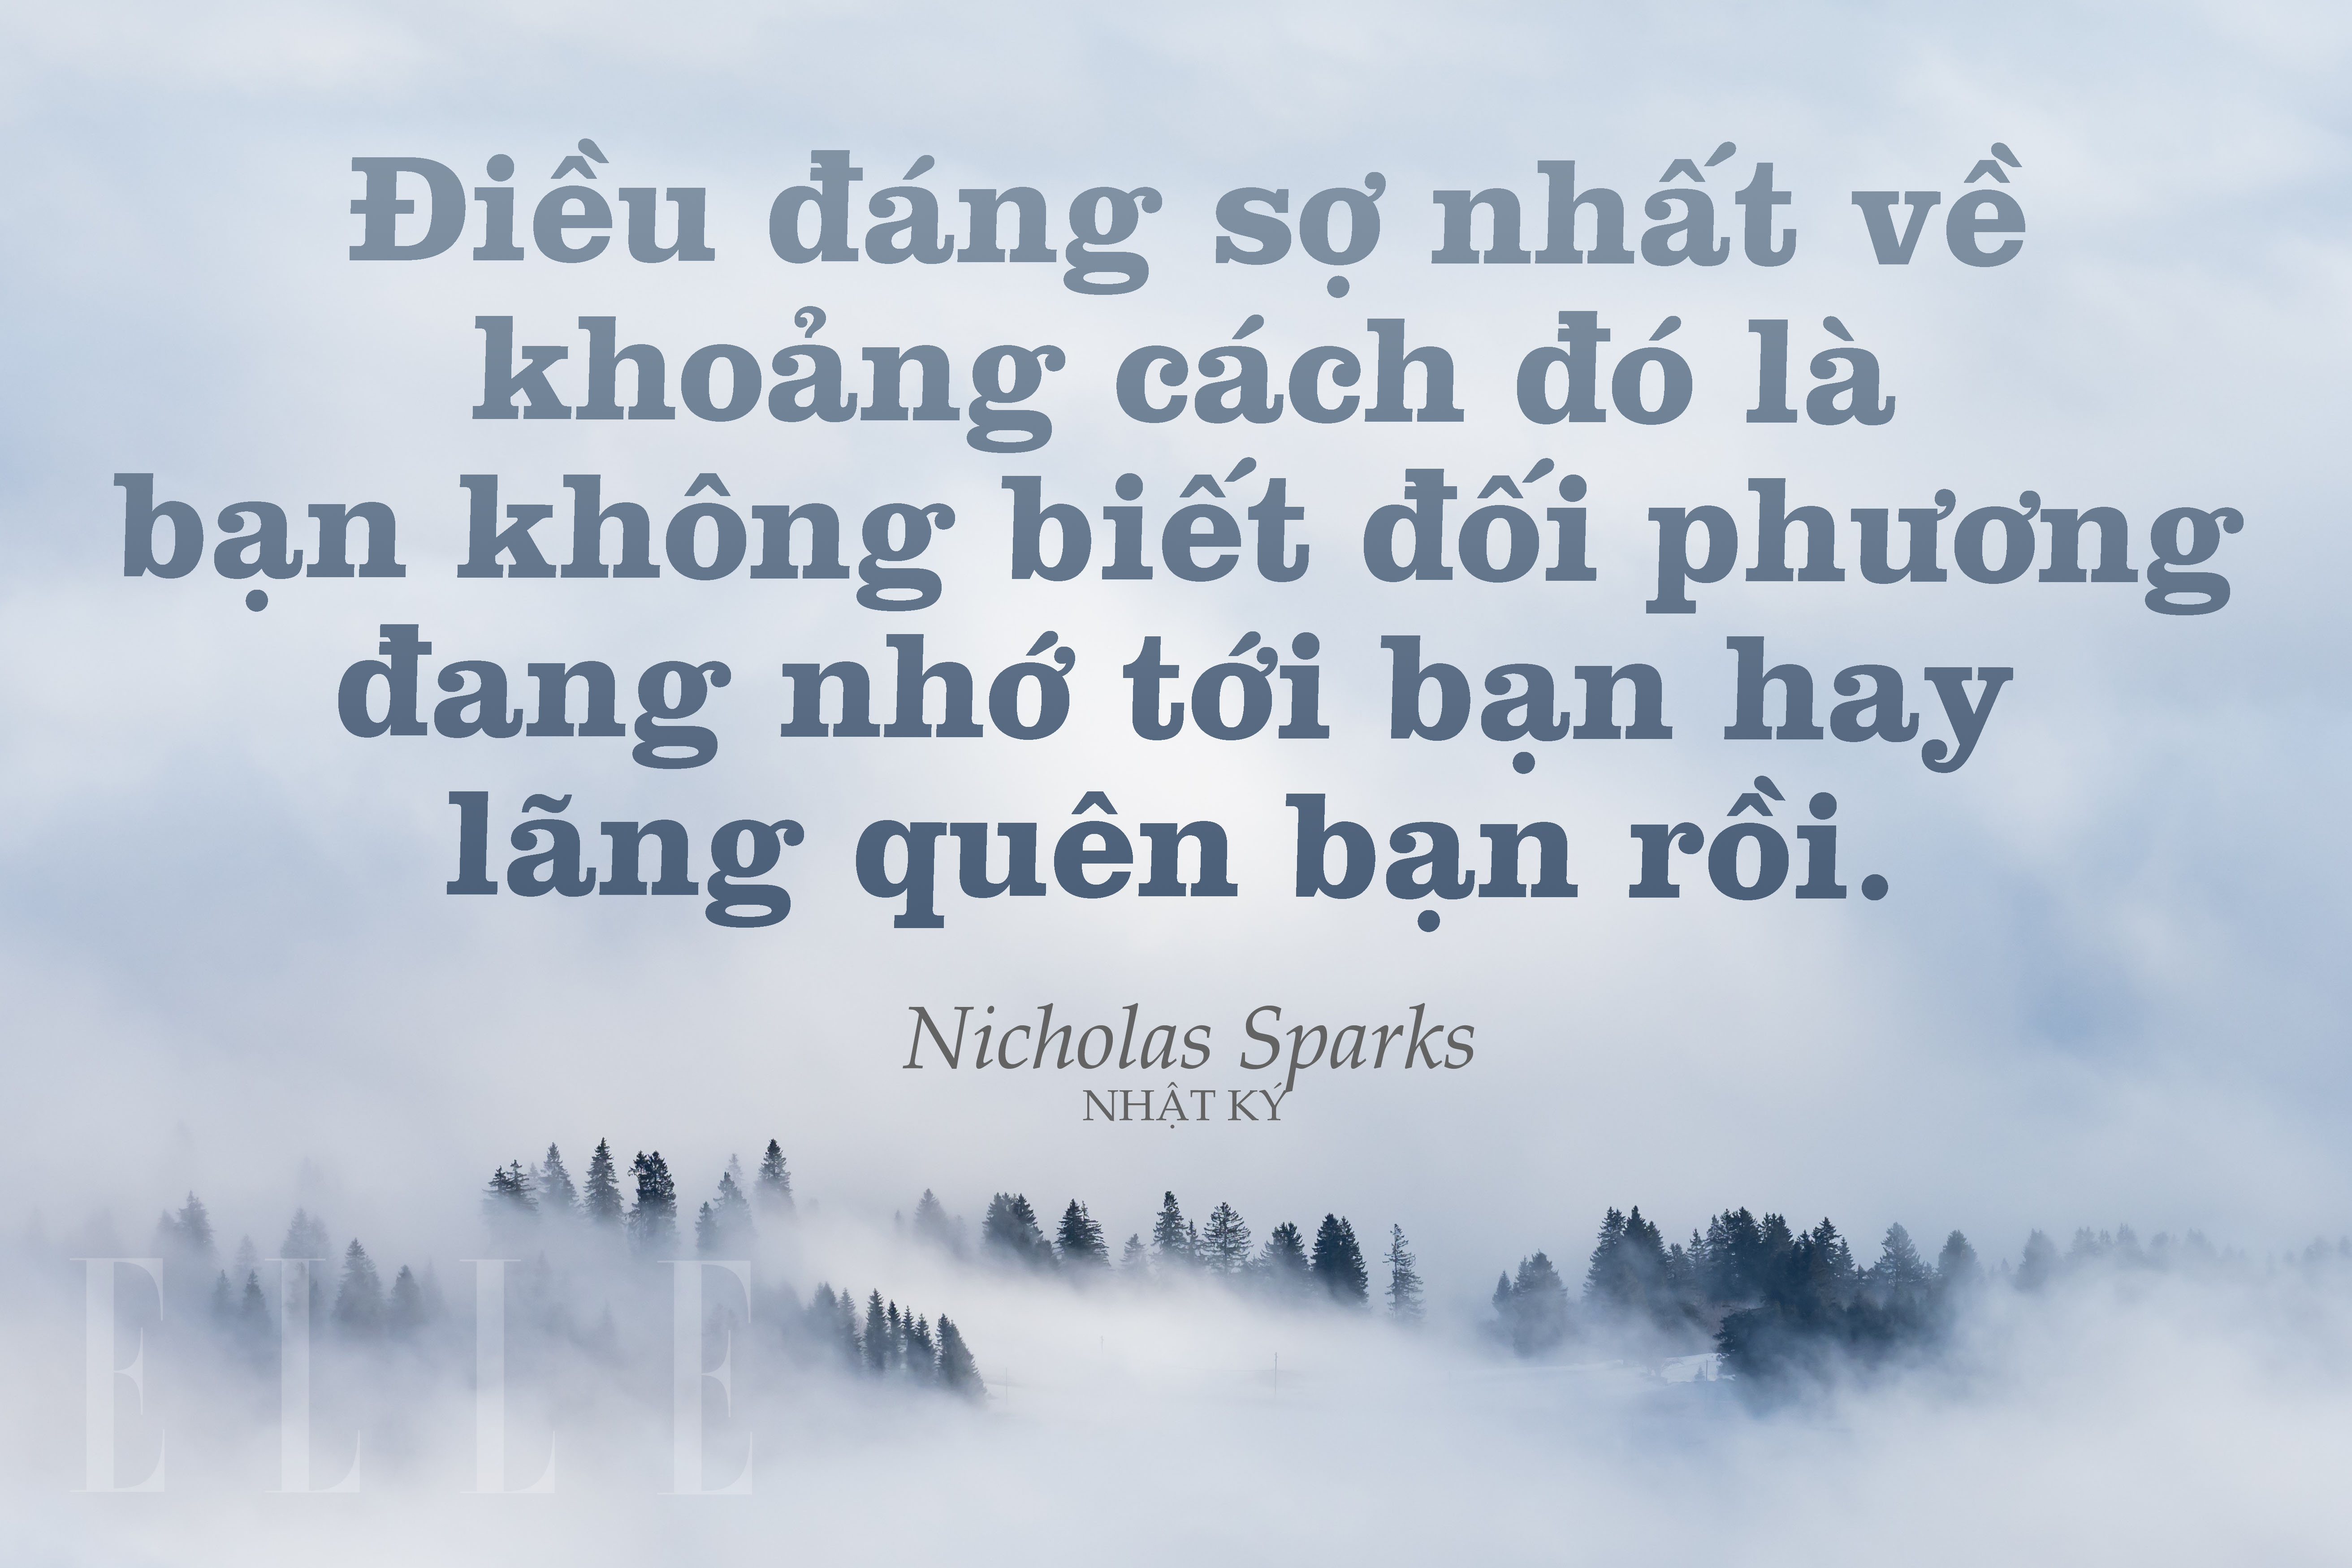 Nicholas Sparks 11